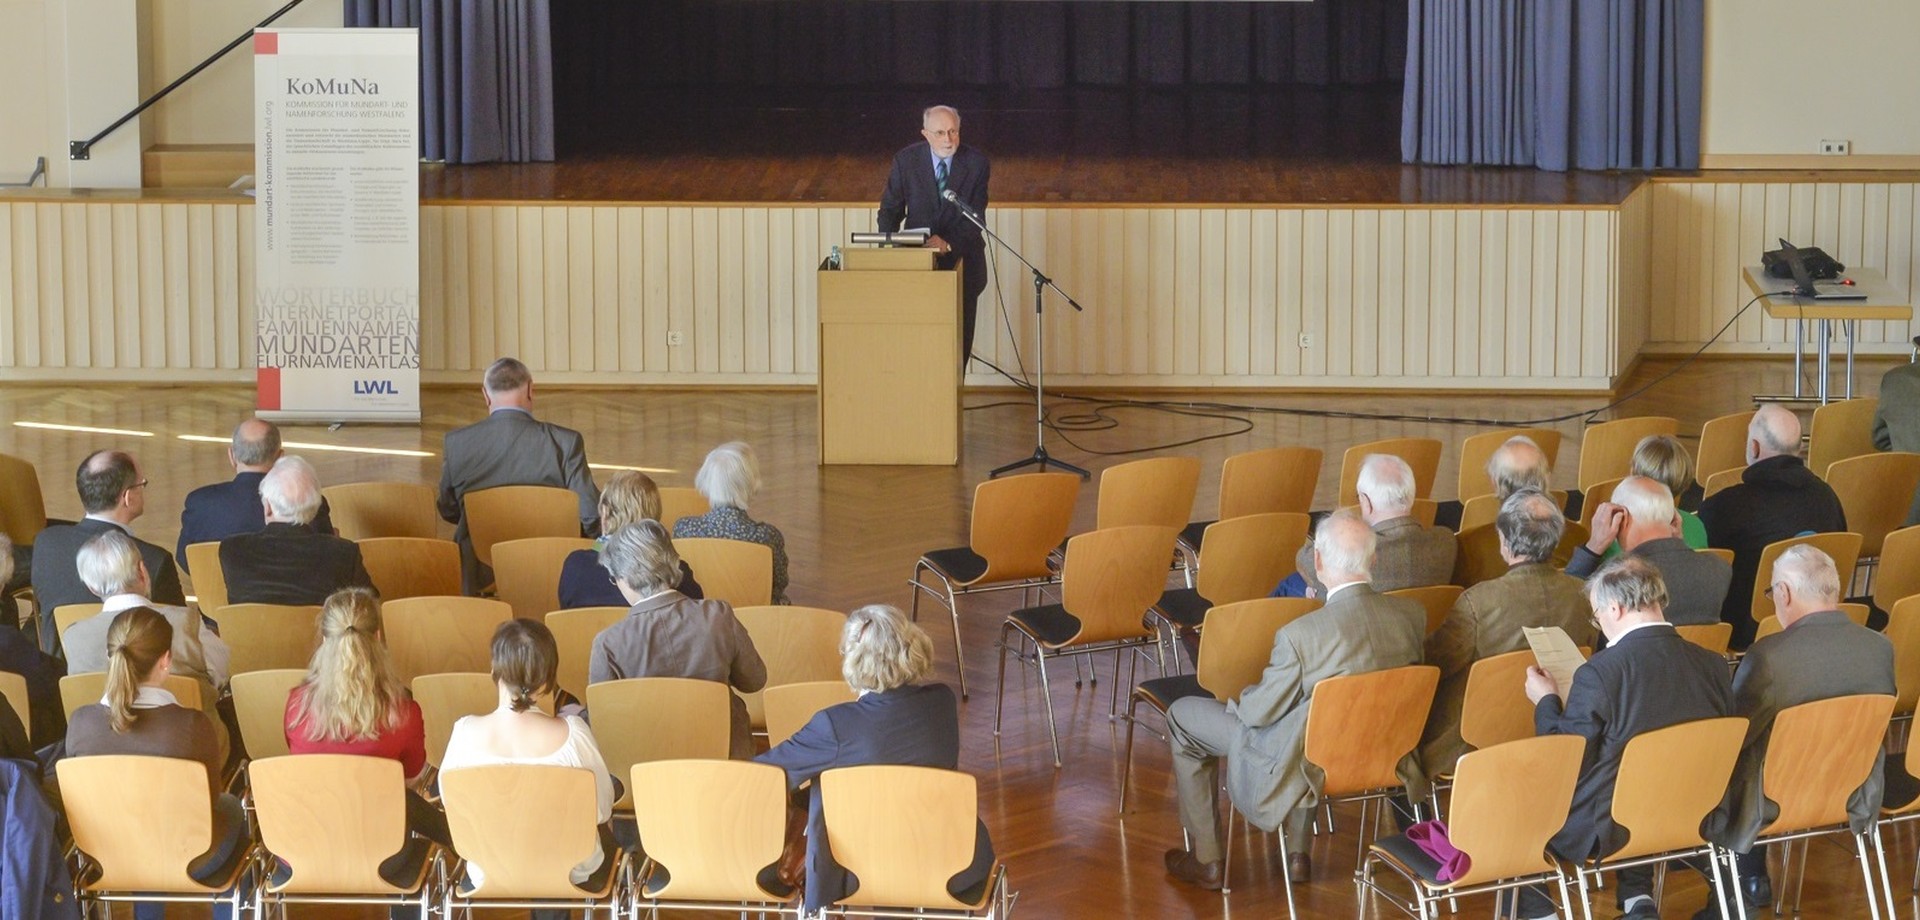 Aufnahme während eines Vortrags im Saal mit Zuhörern